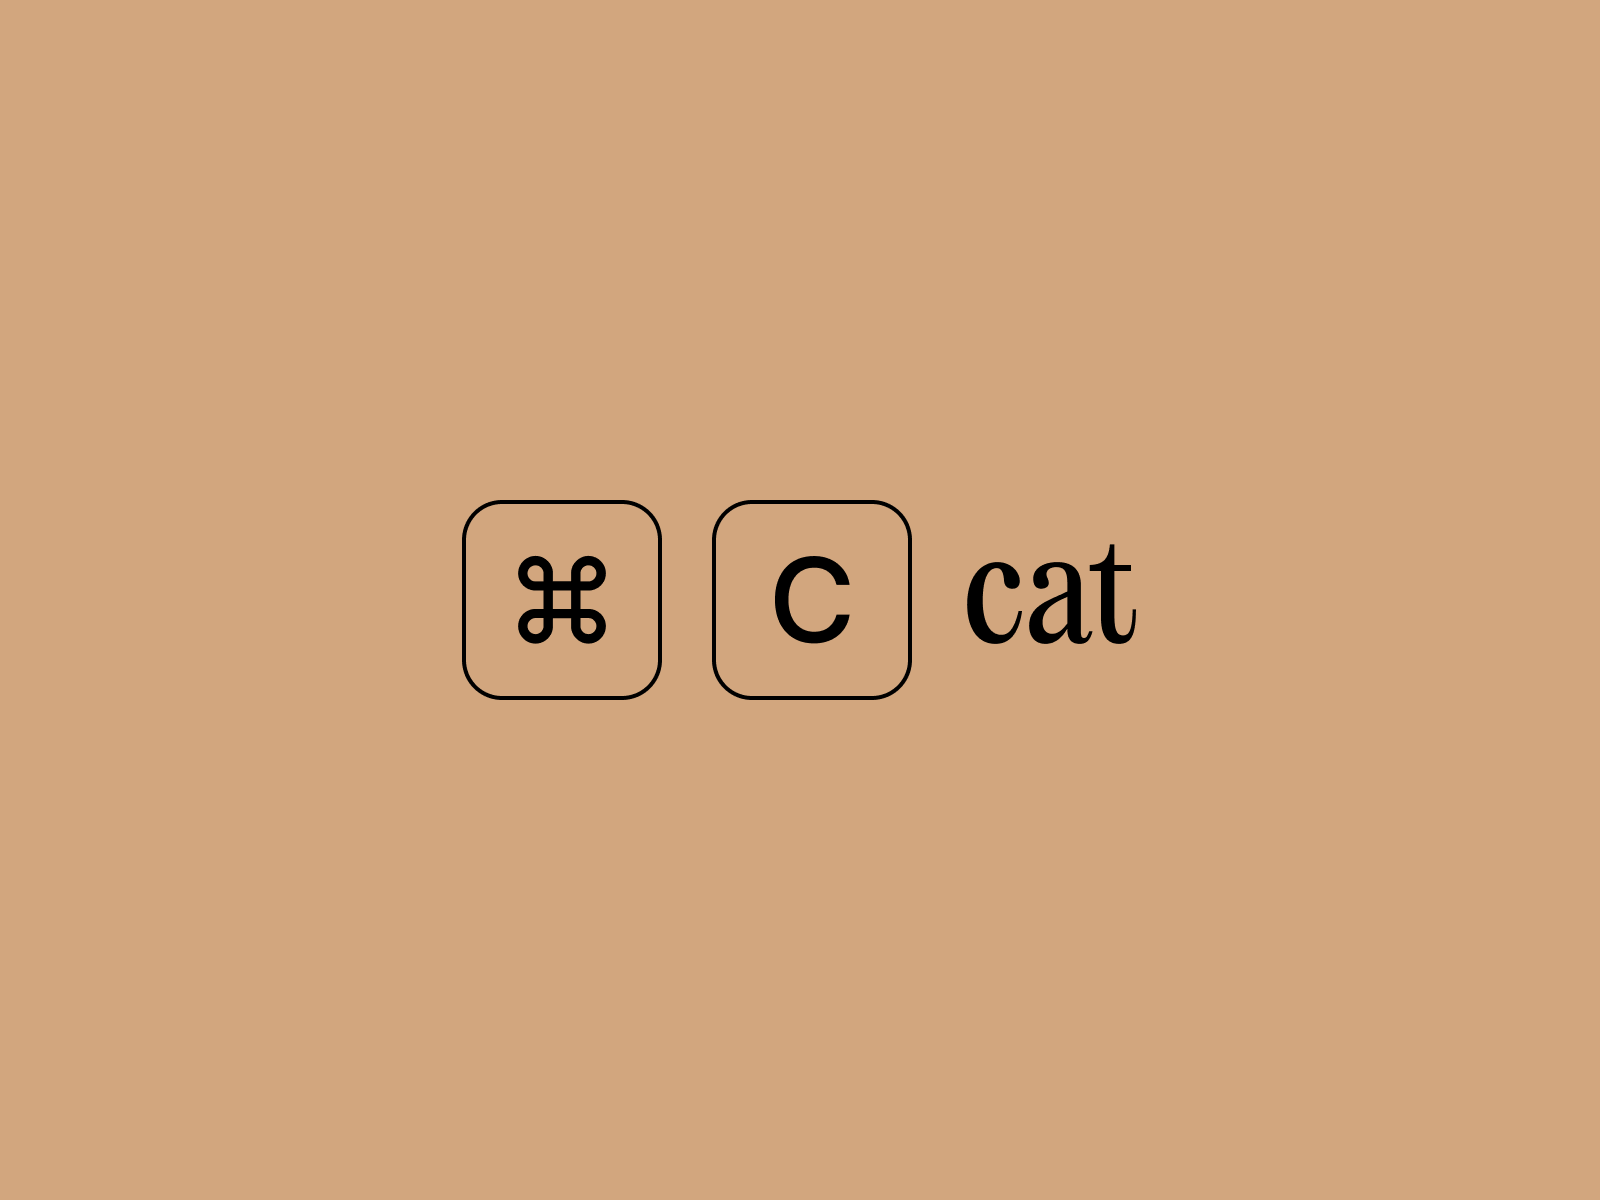 command c cat